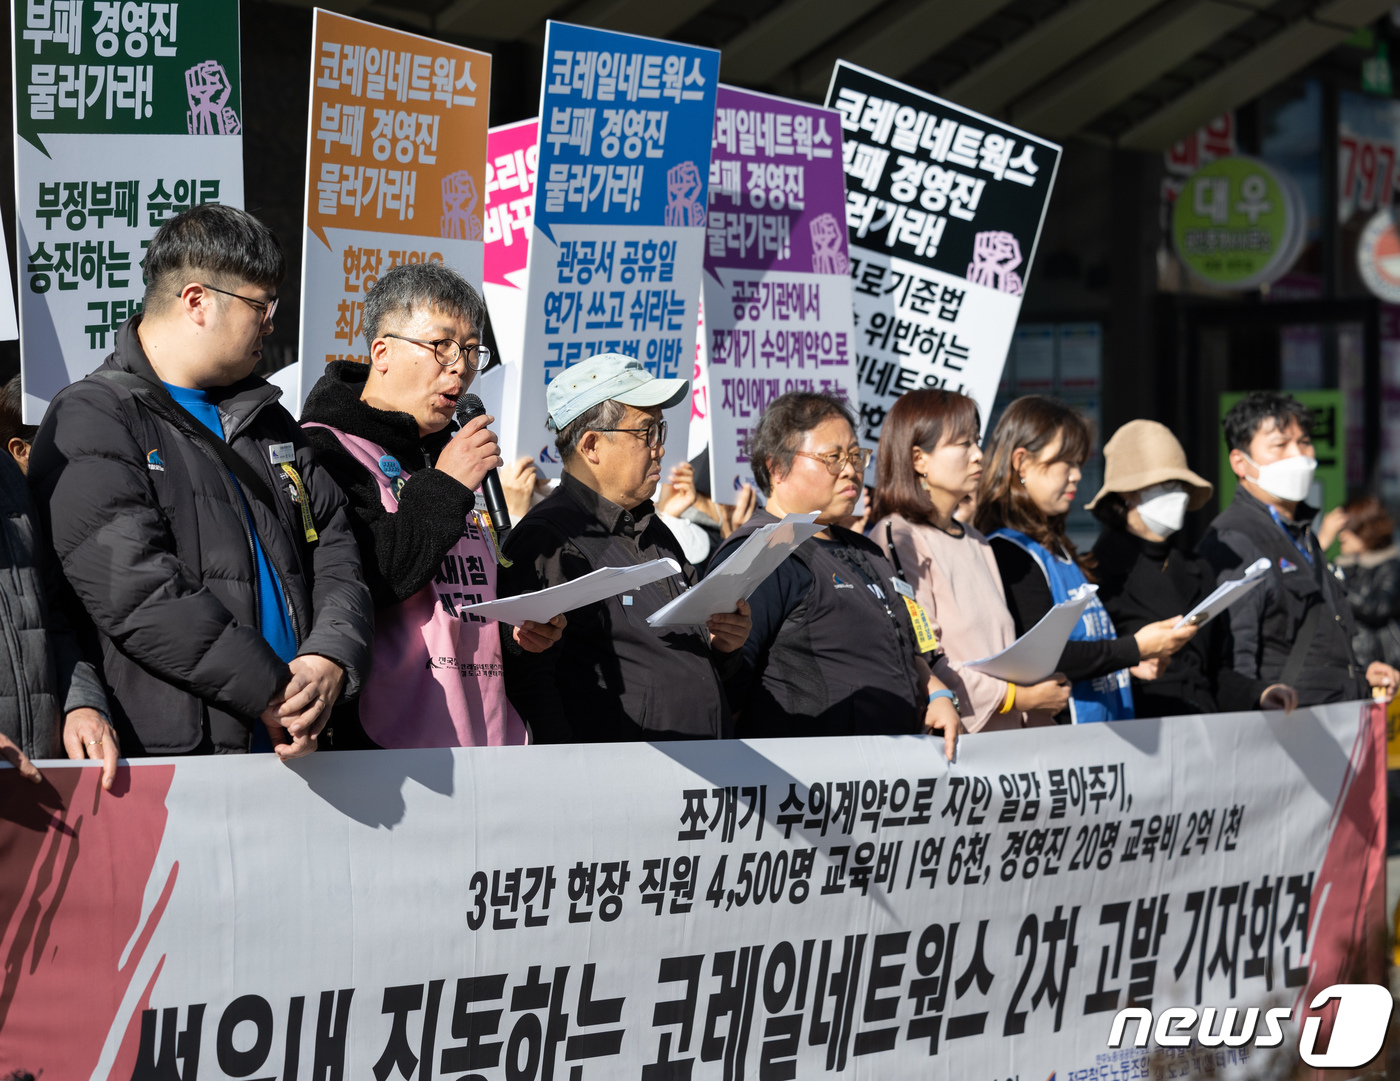 (서울=뉴스1) 이재명 기자 = 전국철도노동조합 코레일네트웍스지부 조합원들이 21일 오후 서울 용산구 코레일네트웍스 본사 앞에서 열린 부패 행위 고발 기자회견에서 발언을 하고 있다 …